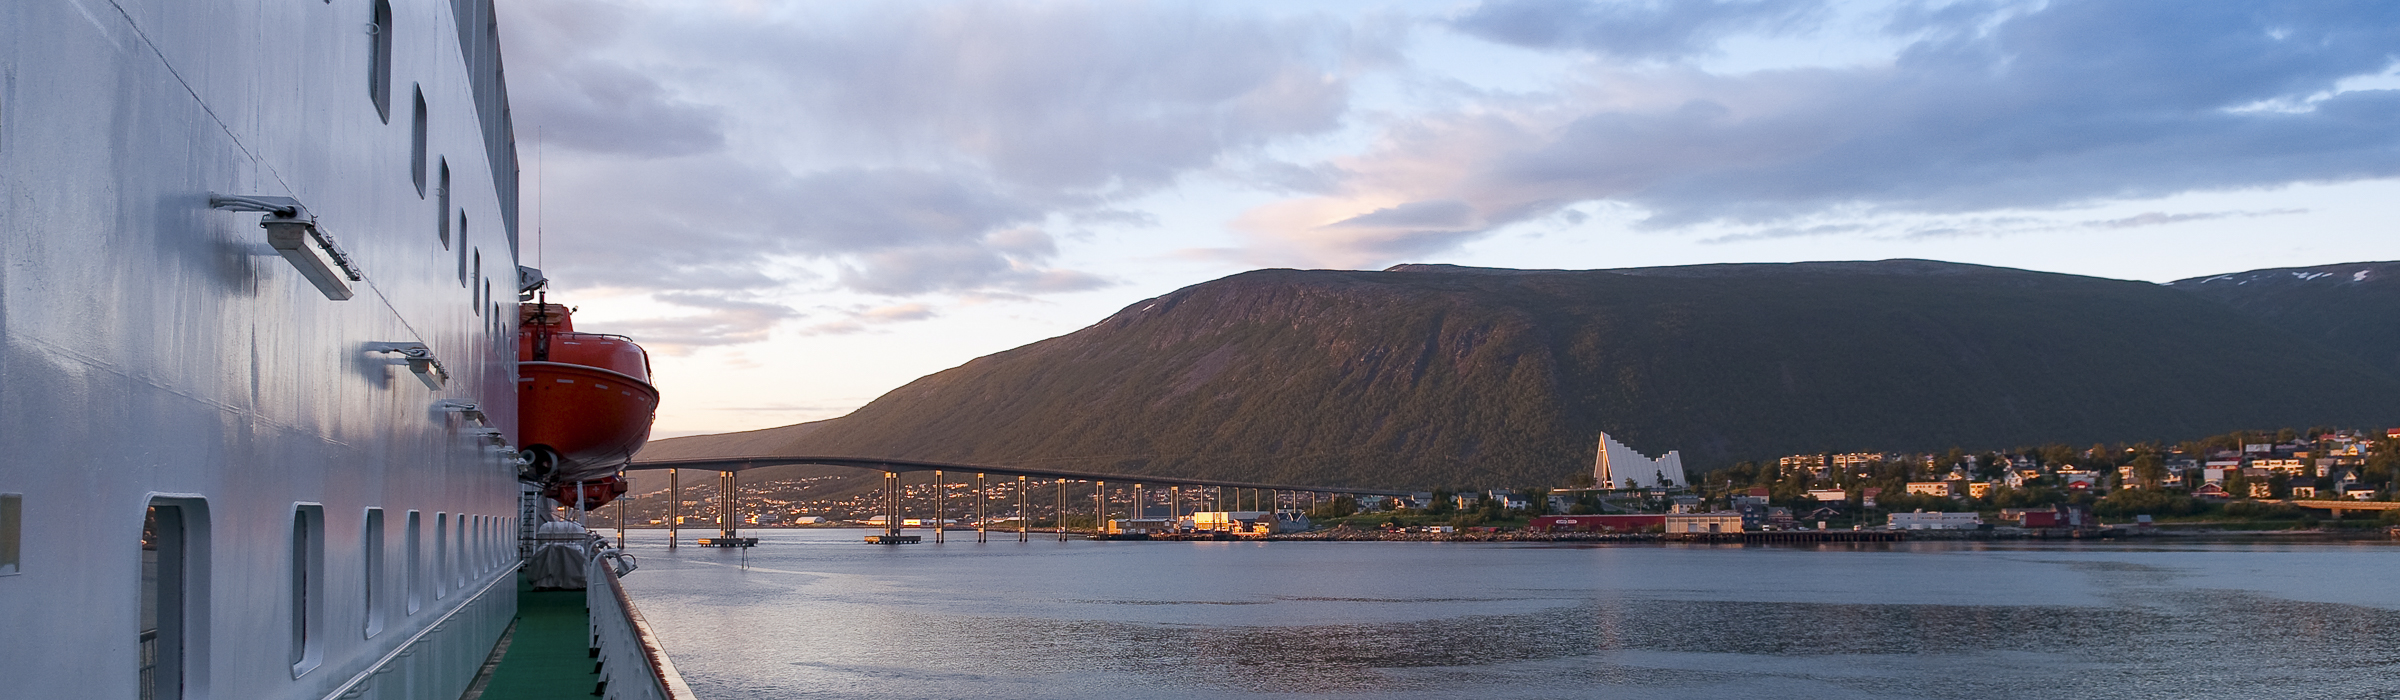 Sommerreise Hurtigruten - Tromsø